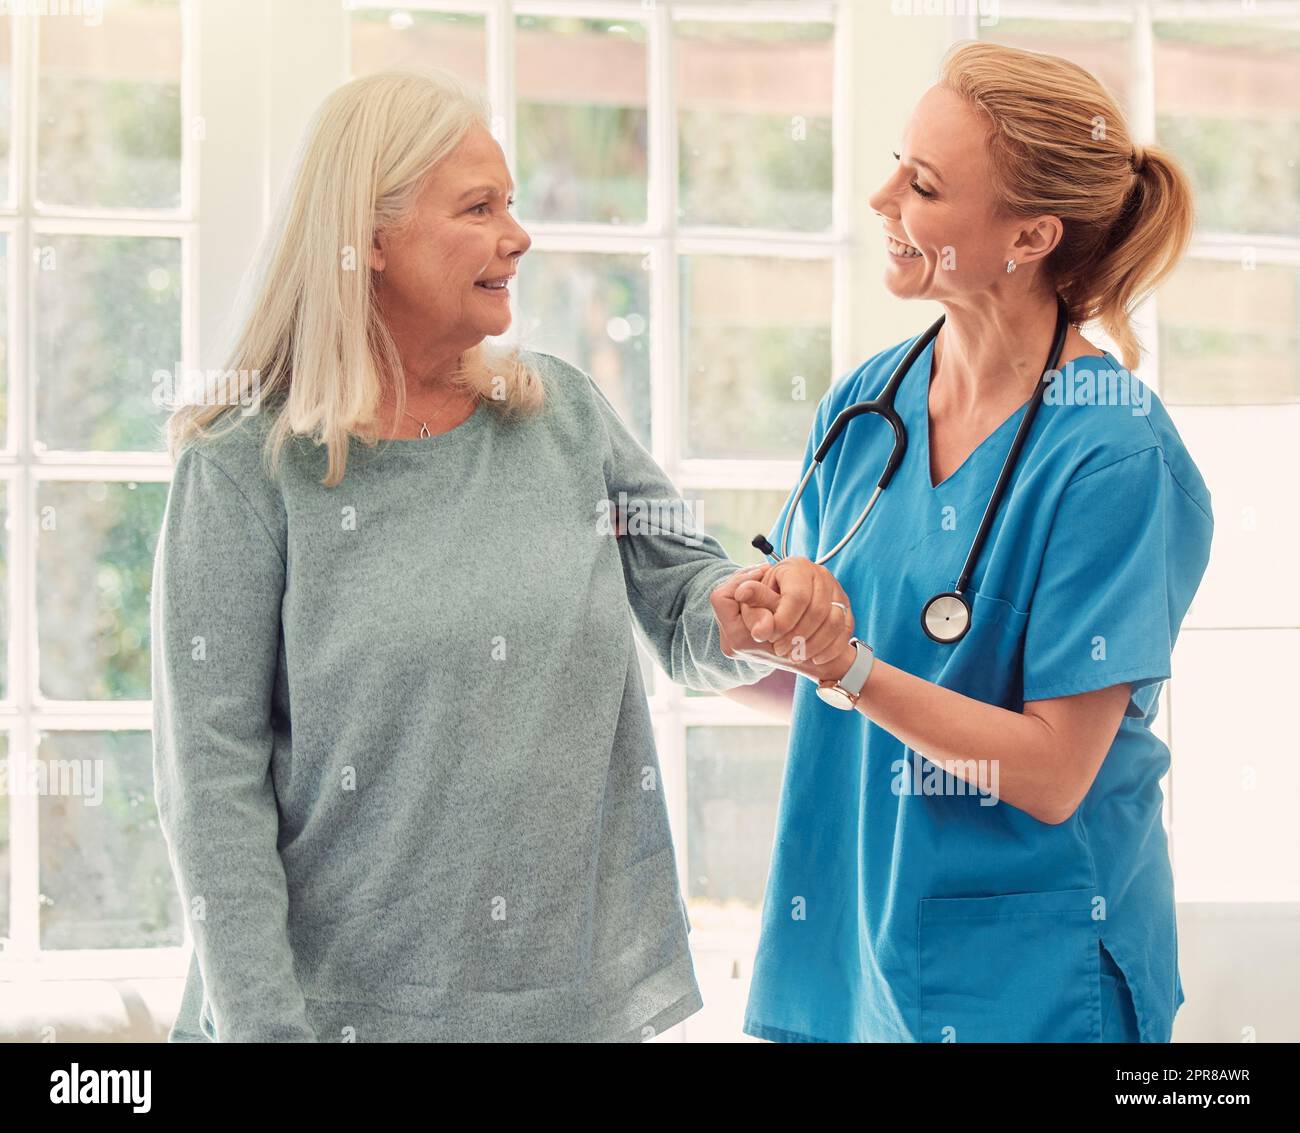 La gente apprezza e non dimentica mai quella mano d'aiuto. Shot di una donna anziana sostenuta dalla sua infermiera a casa. Foto Stock